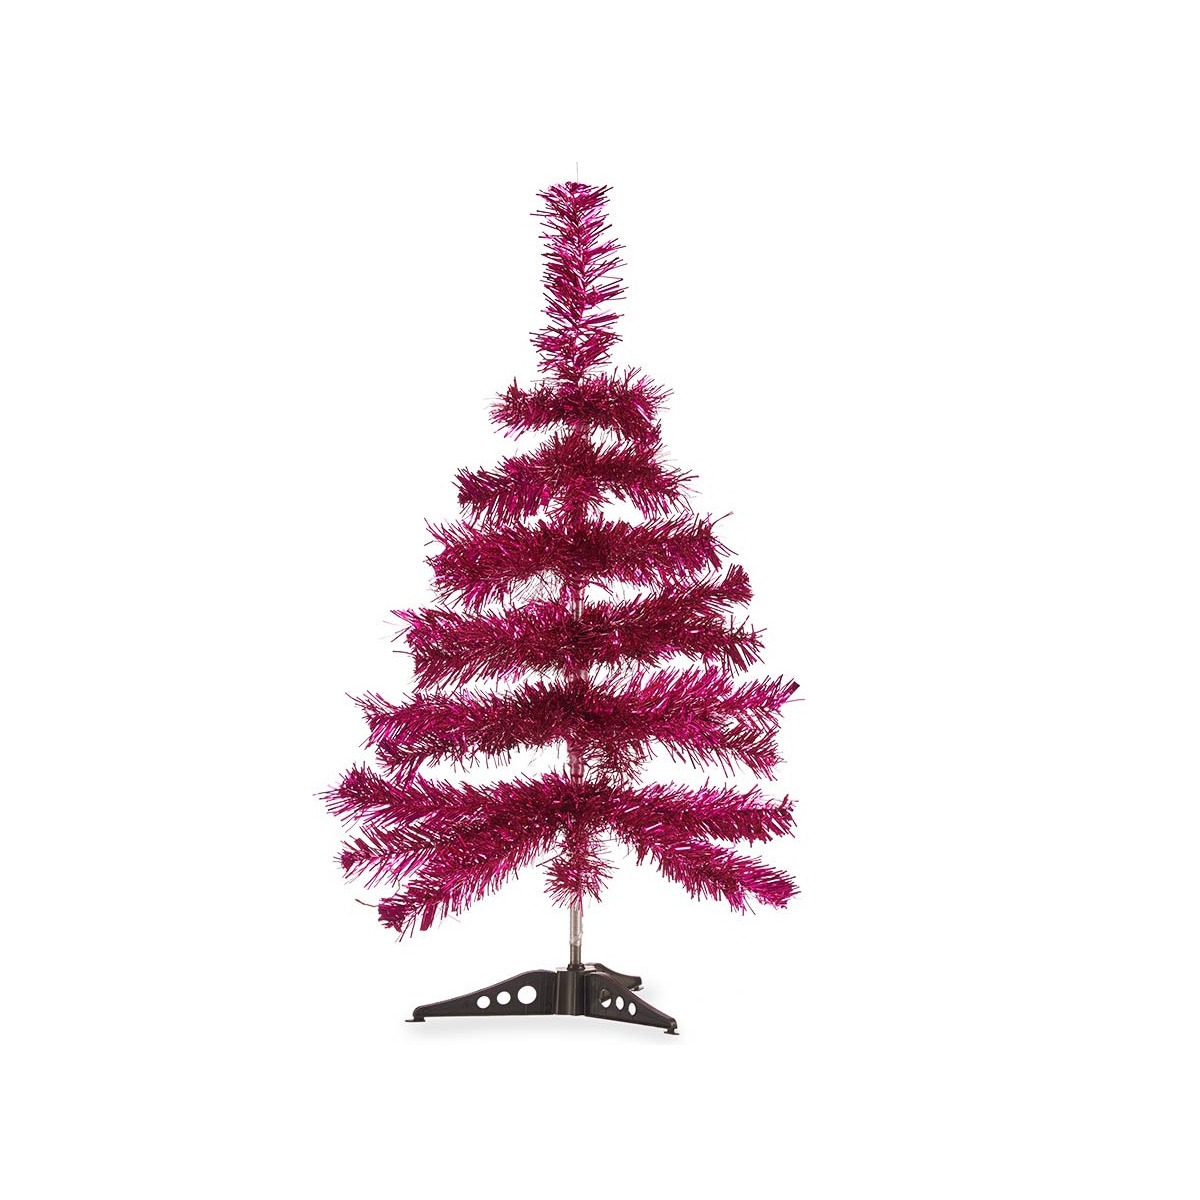 Krist+ kunst kerstboom klein fuchsia roze 60 cm